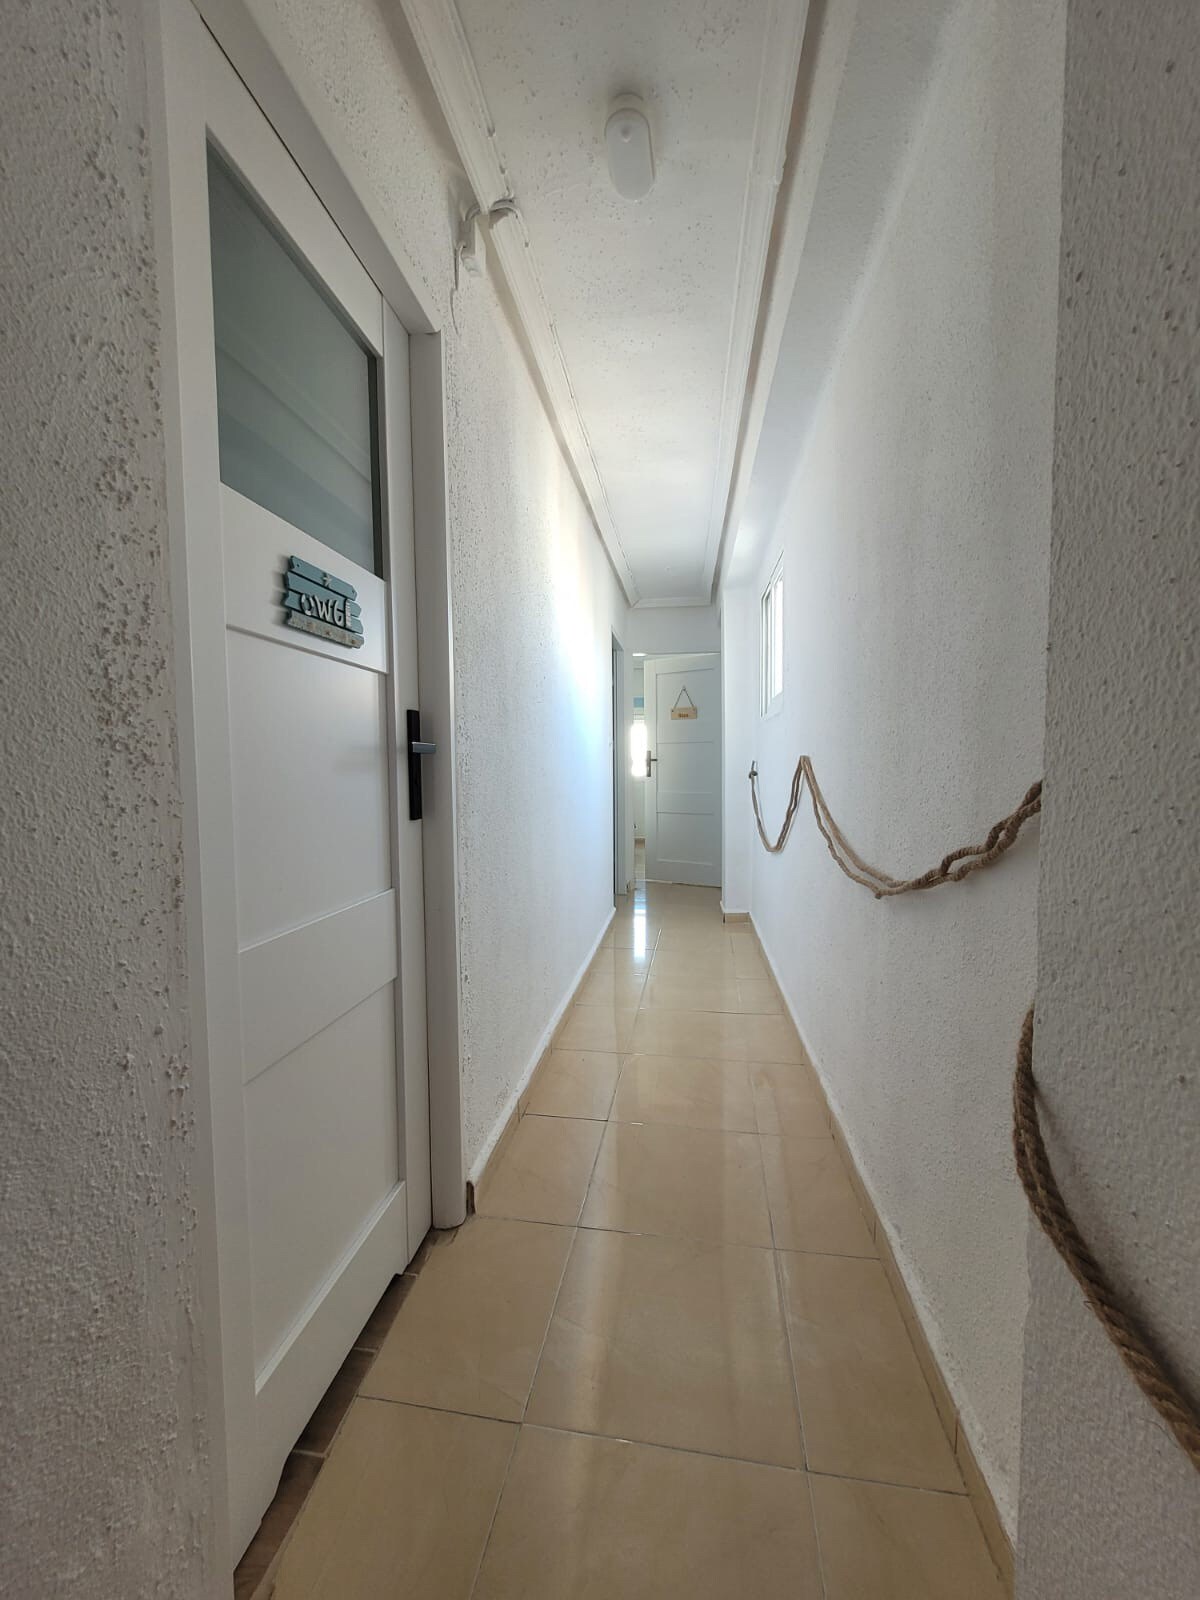 Puerto Escondido (Room Formentera)